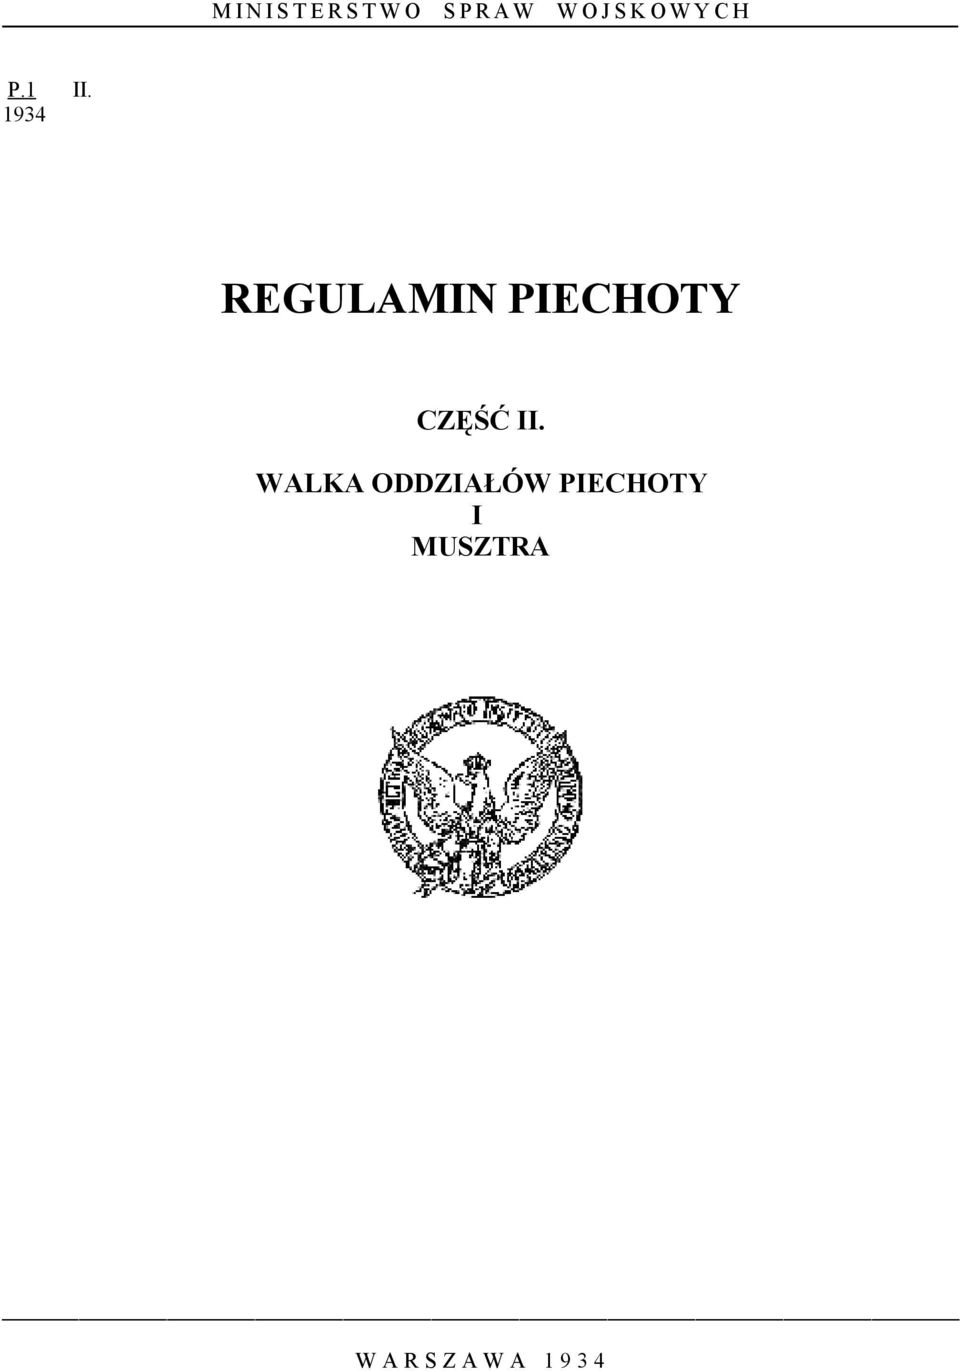 1934 REGULAMIN PIECHOTY CZĘŚĆ II.